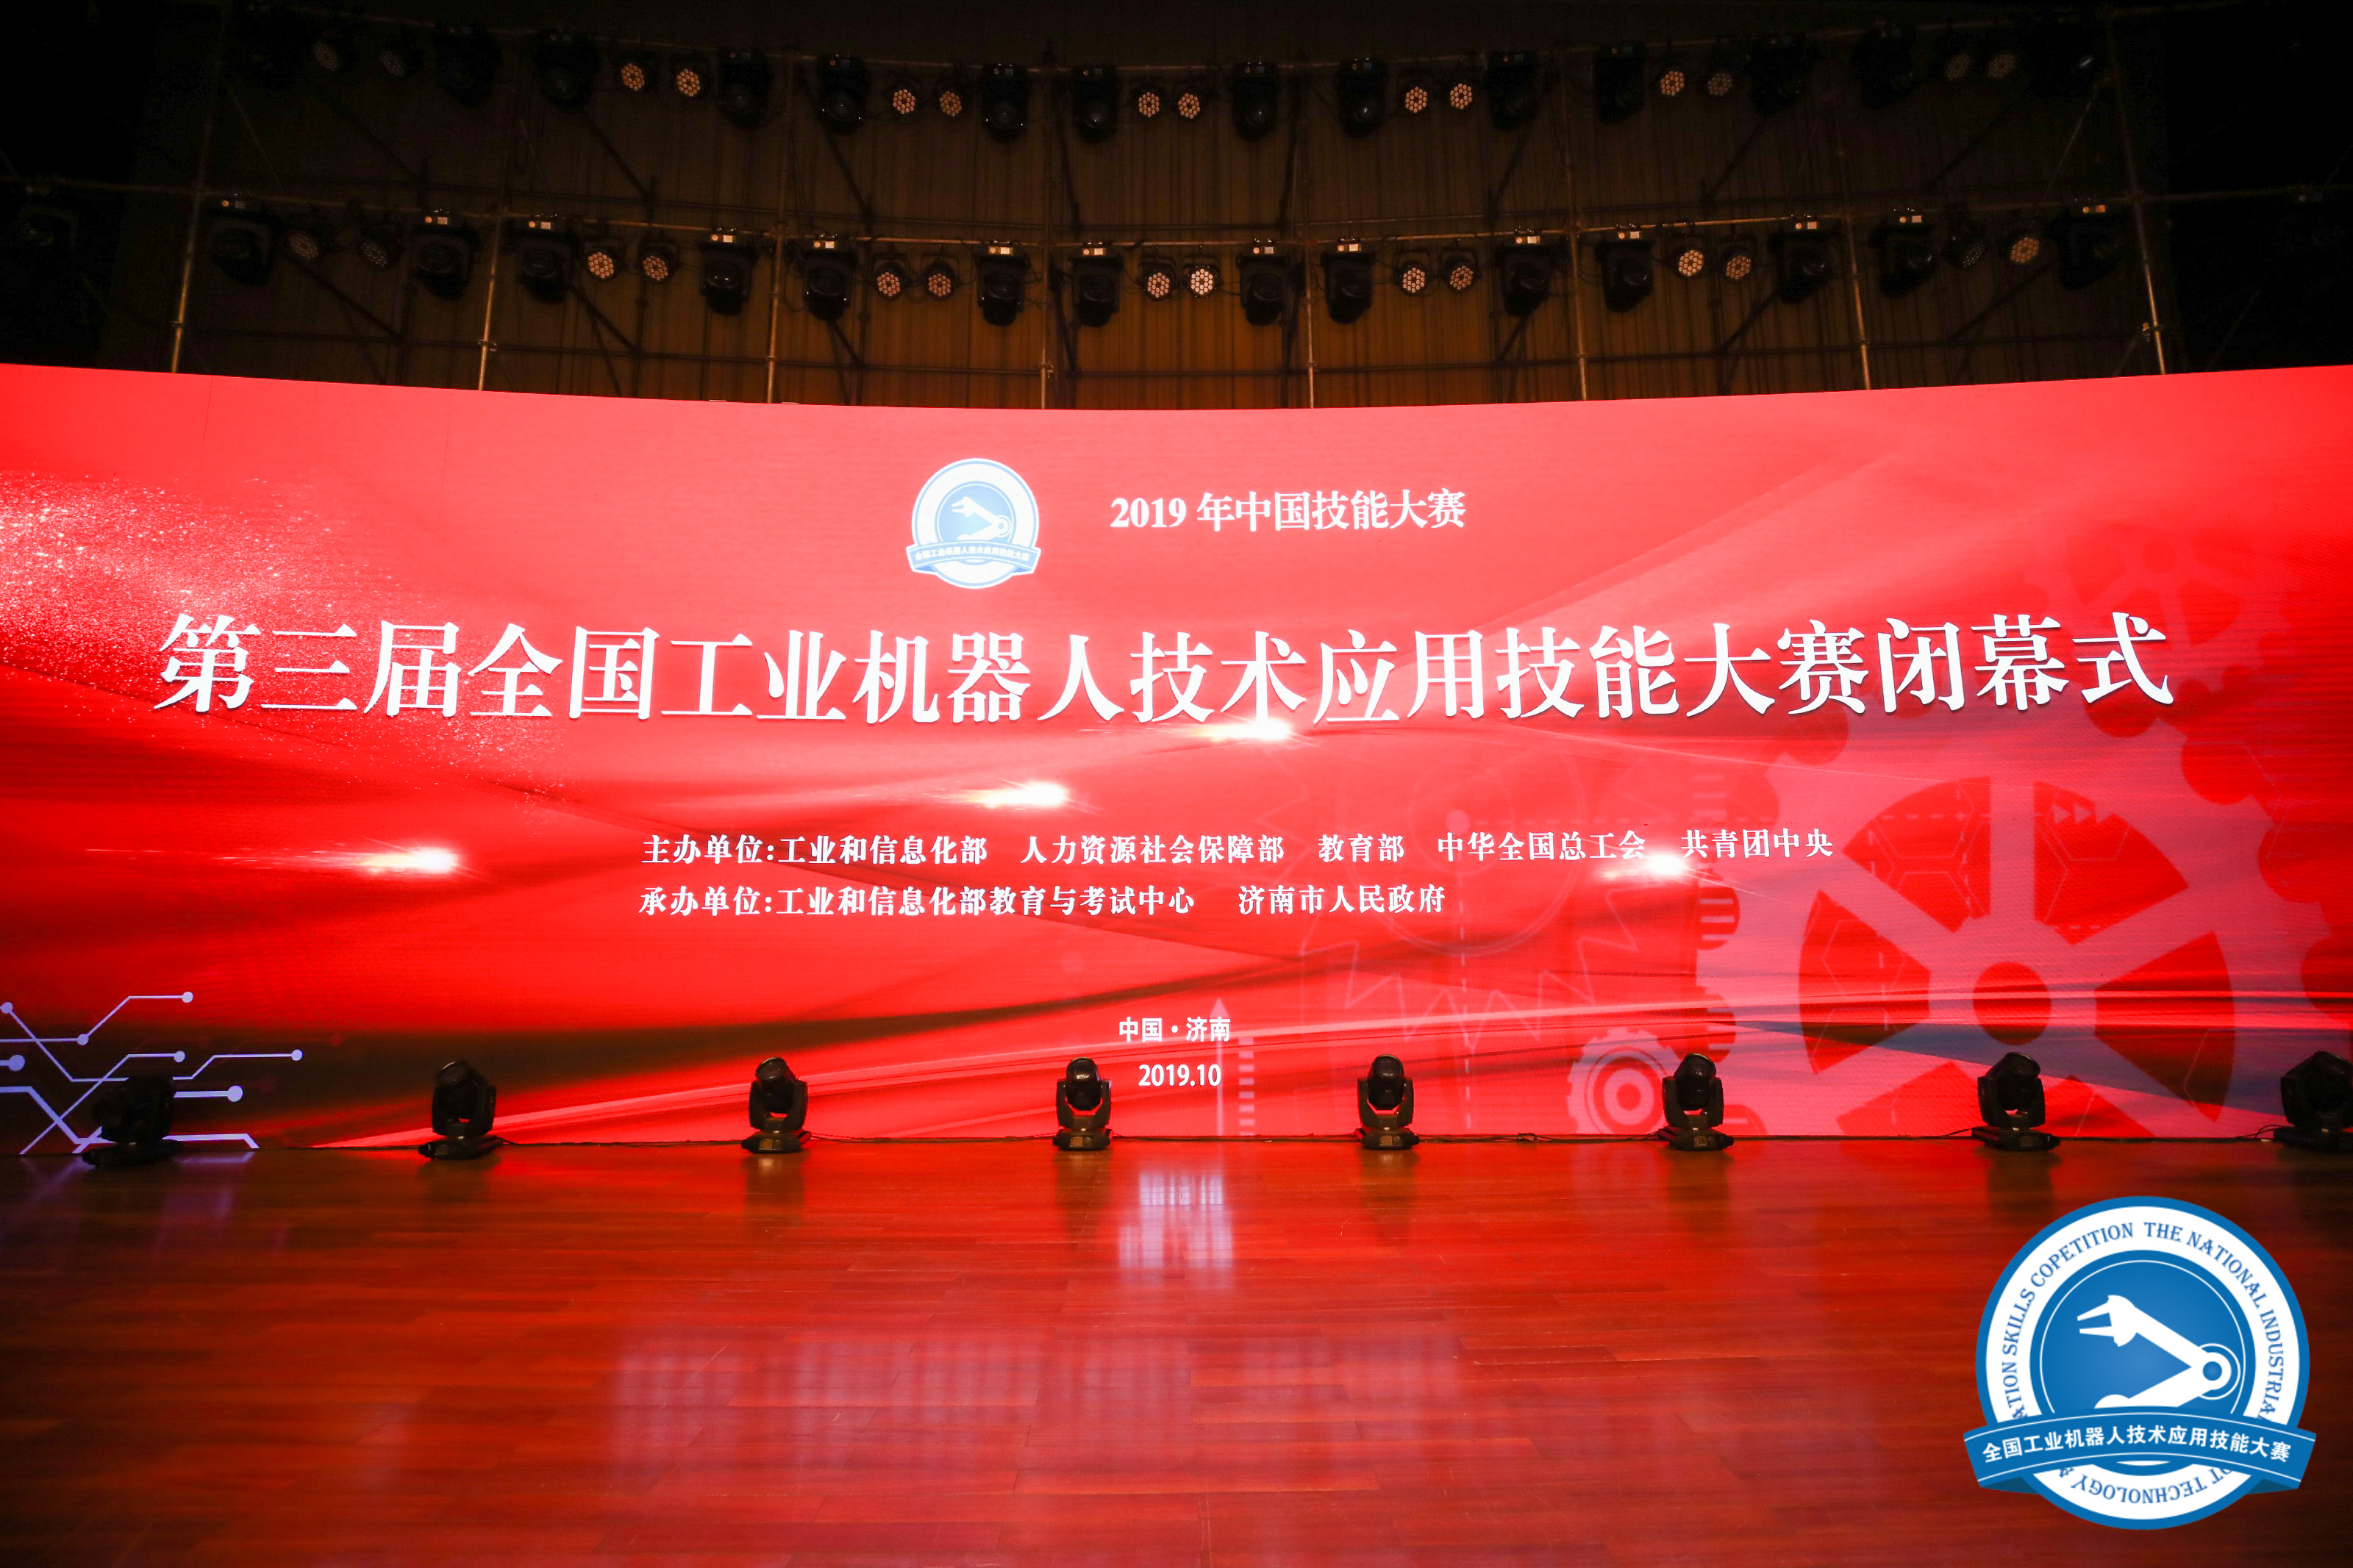 2019年中国技能大赛——第三届全国工业机器人技术应用技能大赛闭幕式